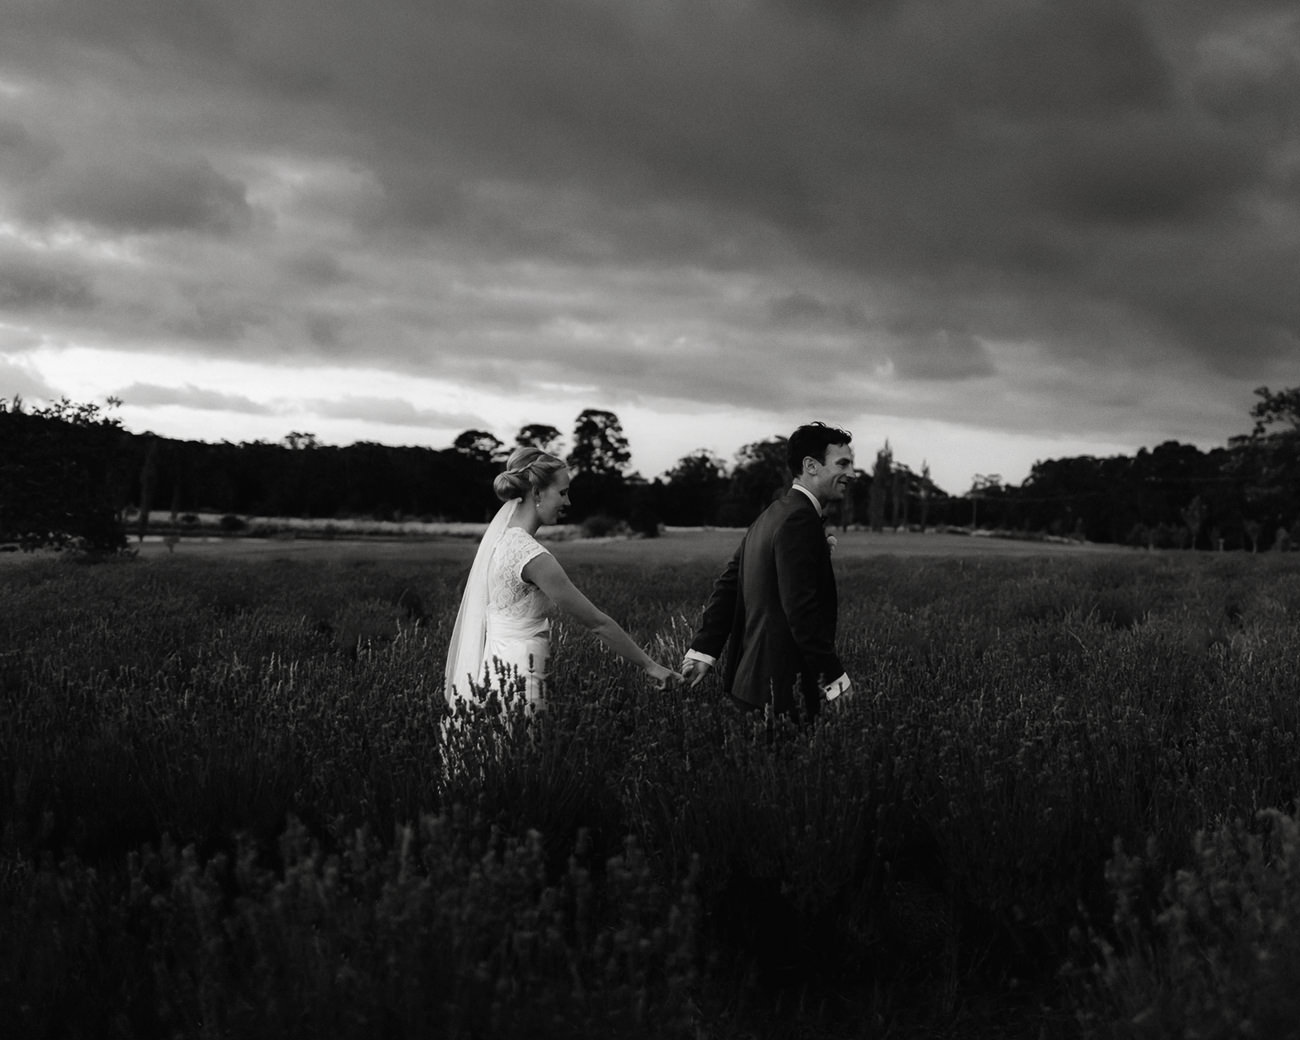 Sault Daylesford wedding lavender